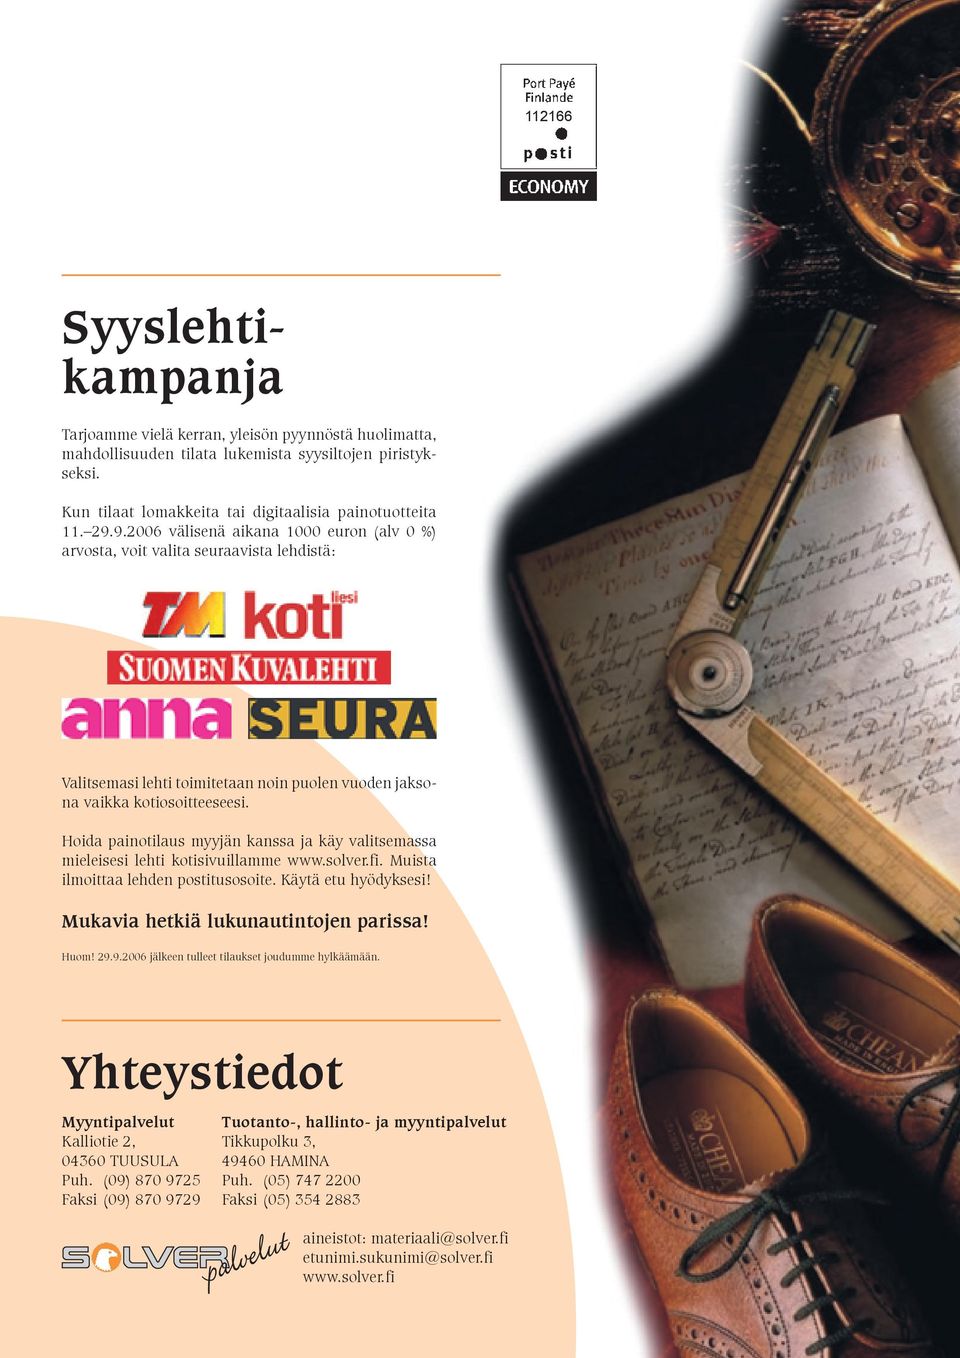 Hoida painotilaus myyjän kanssa ja käy valitsemassa mieleisesi lehti kotisivuillamme www.solver.fi. Muista ilmoittaa lehden postitusosoite. Käytä etu hyödyksesi!